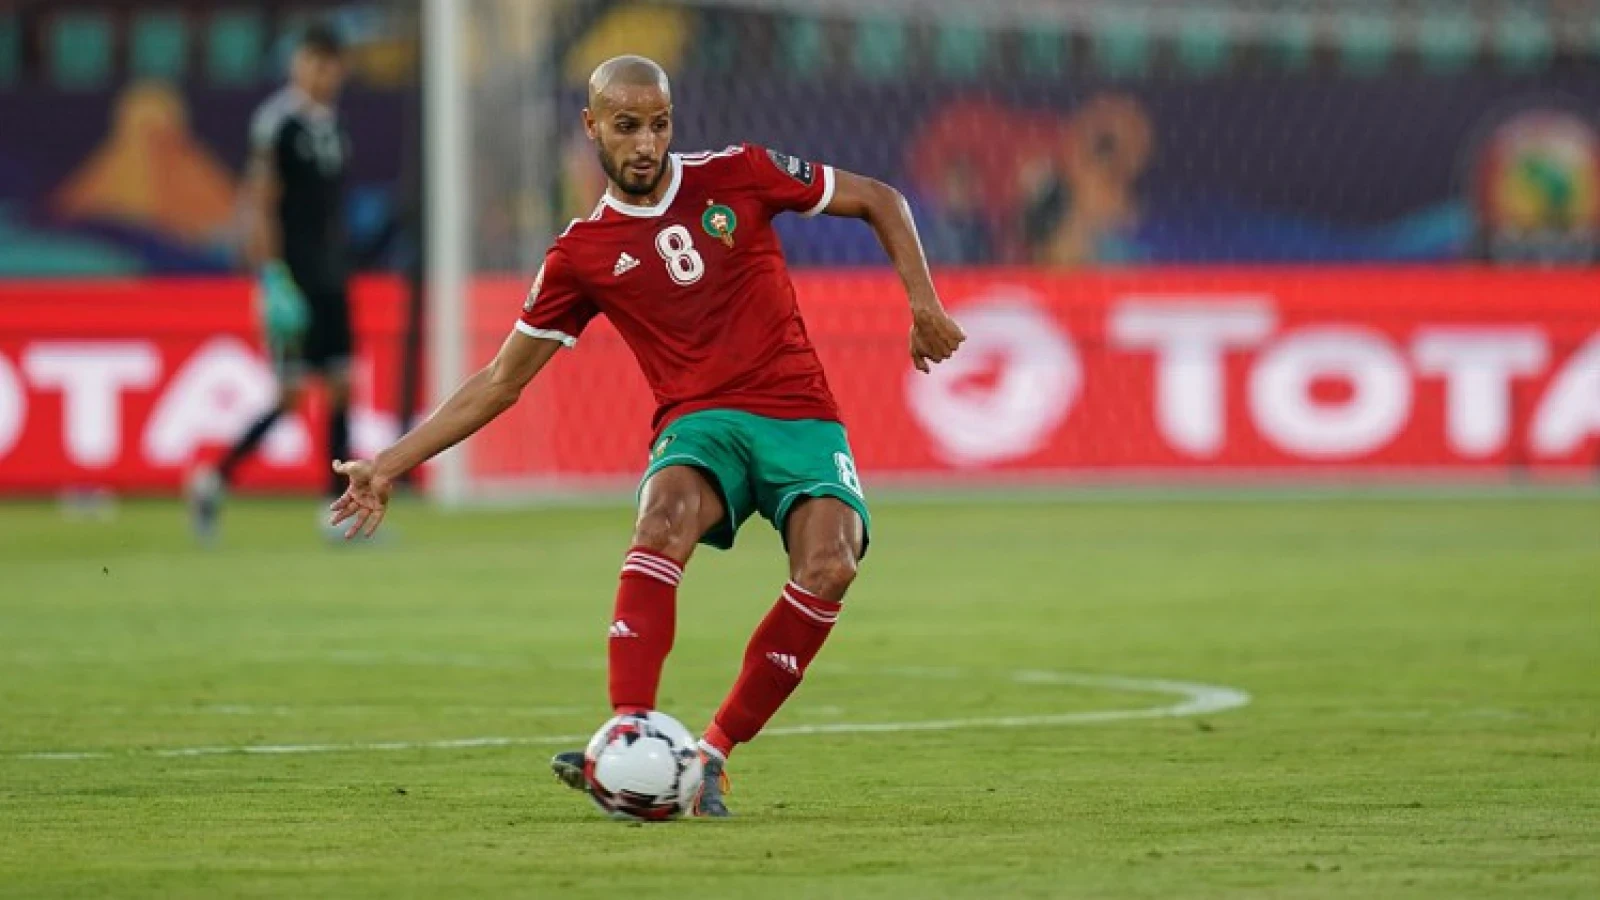 El Ahmadi over toekomst: 'Als ze voor mijn plek een andere speler kunnen krijgen moeten ze dat doen'